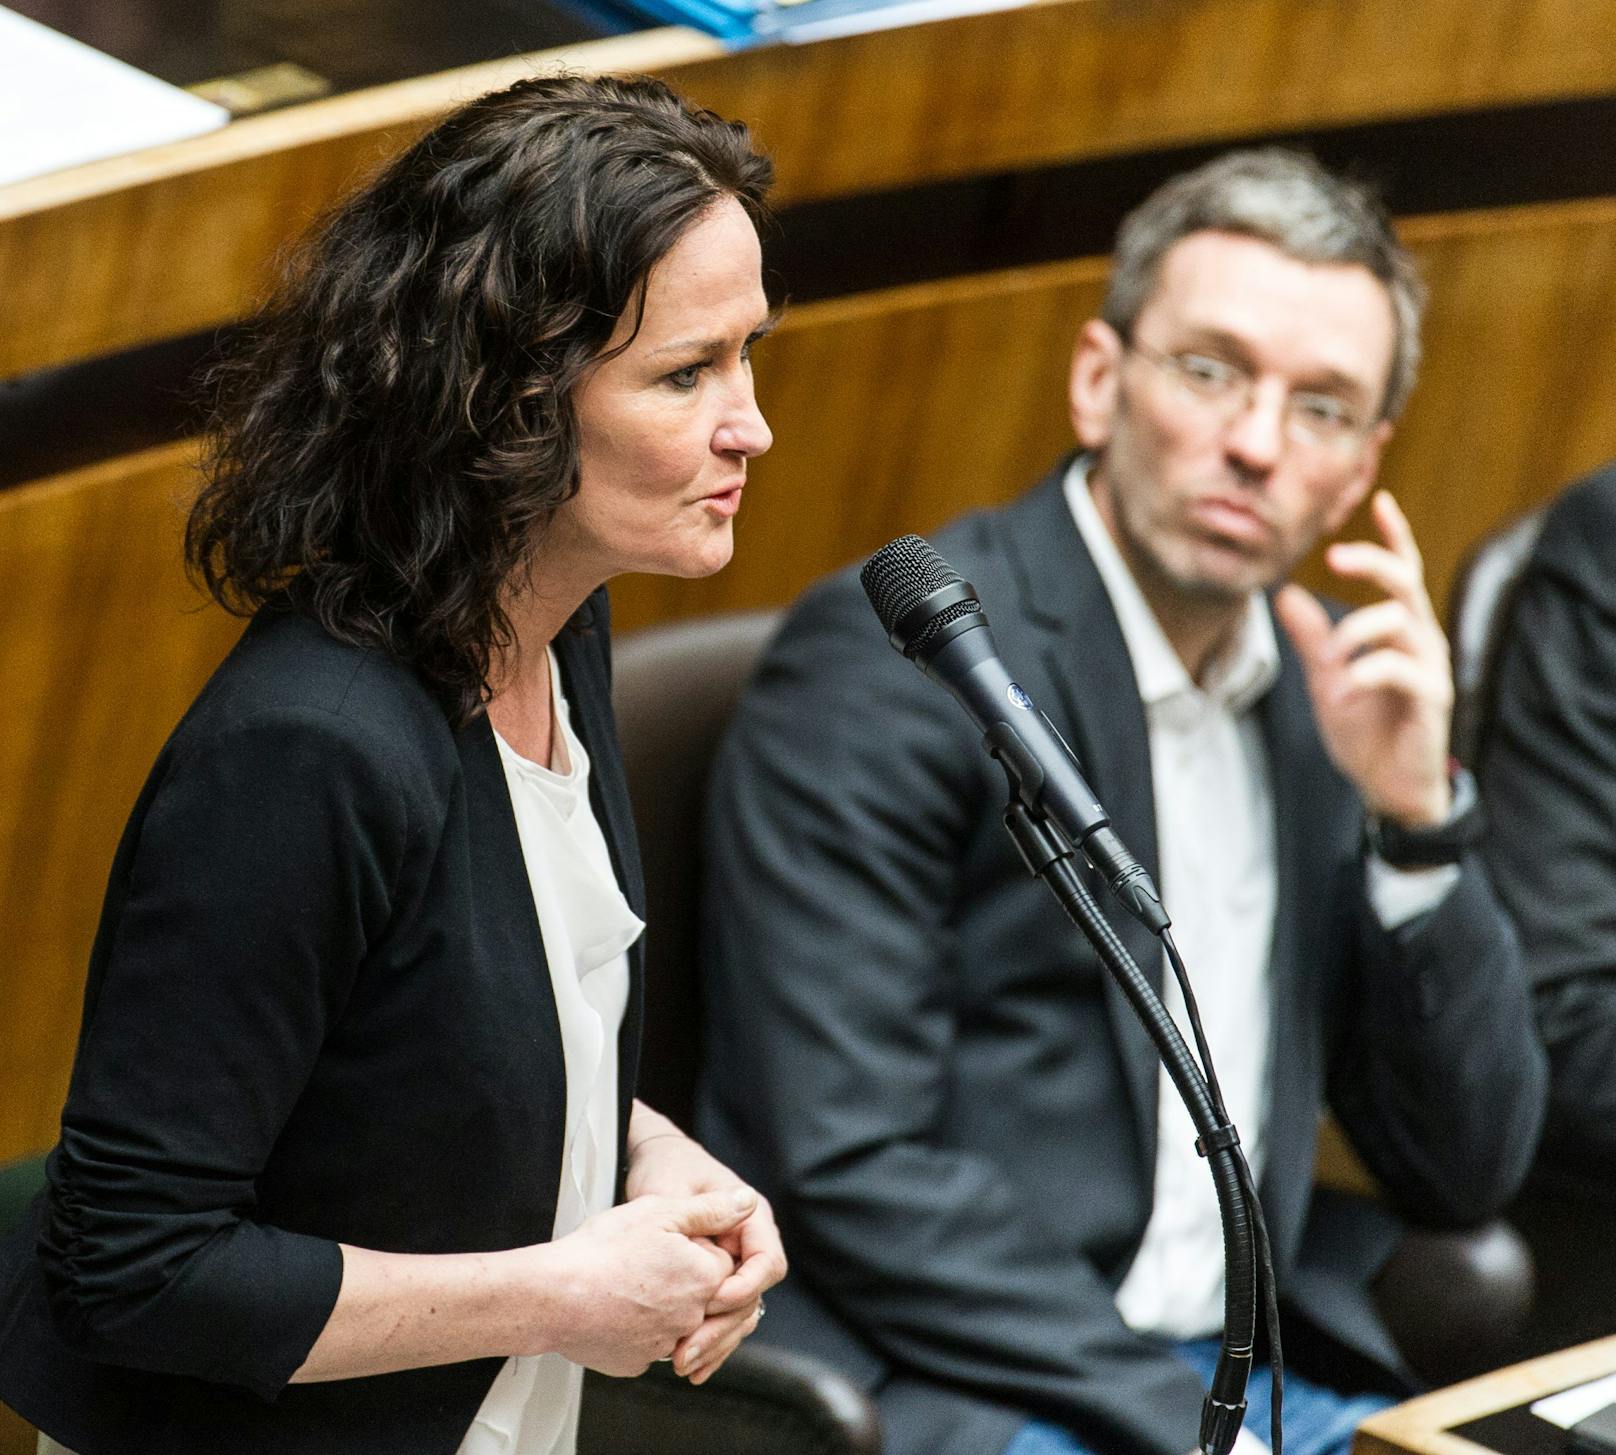 Rückblick auf 2014: Die damals Grünen-Klubobfrau Eva Glawischnig vor dem FPÖ-Nationalratsabgeordneten Herbert Kickl.